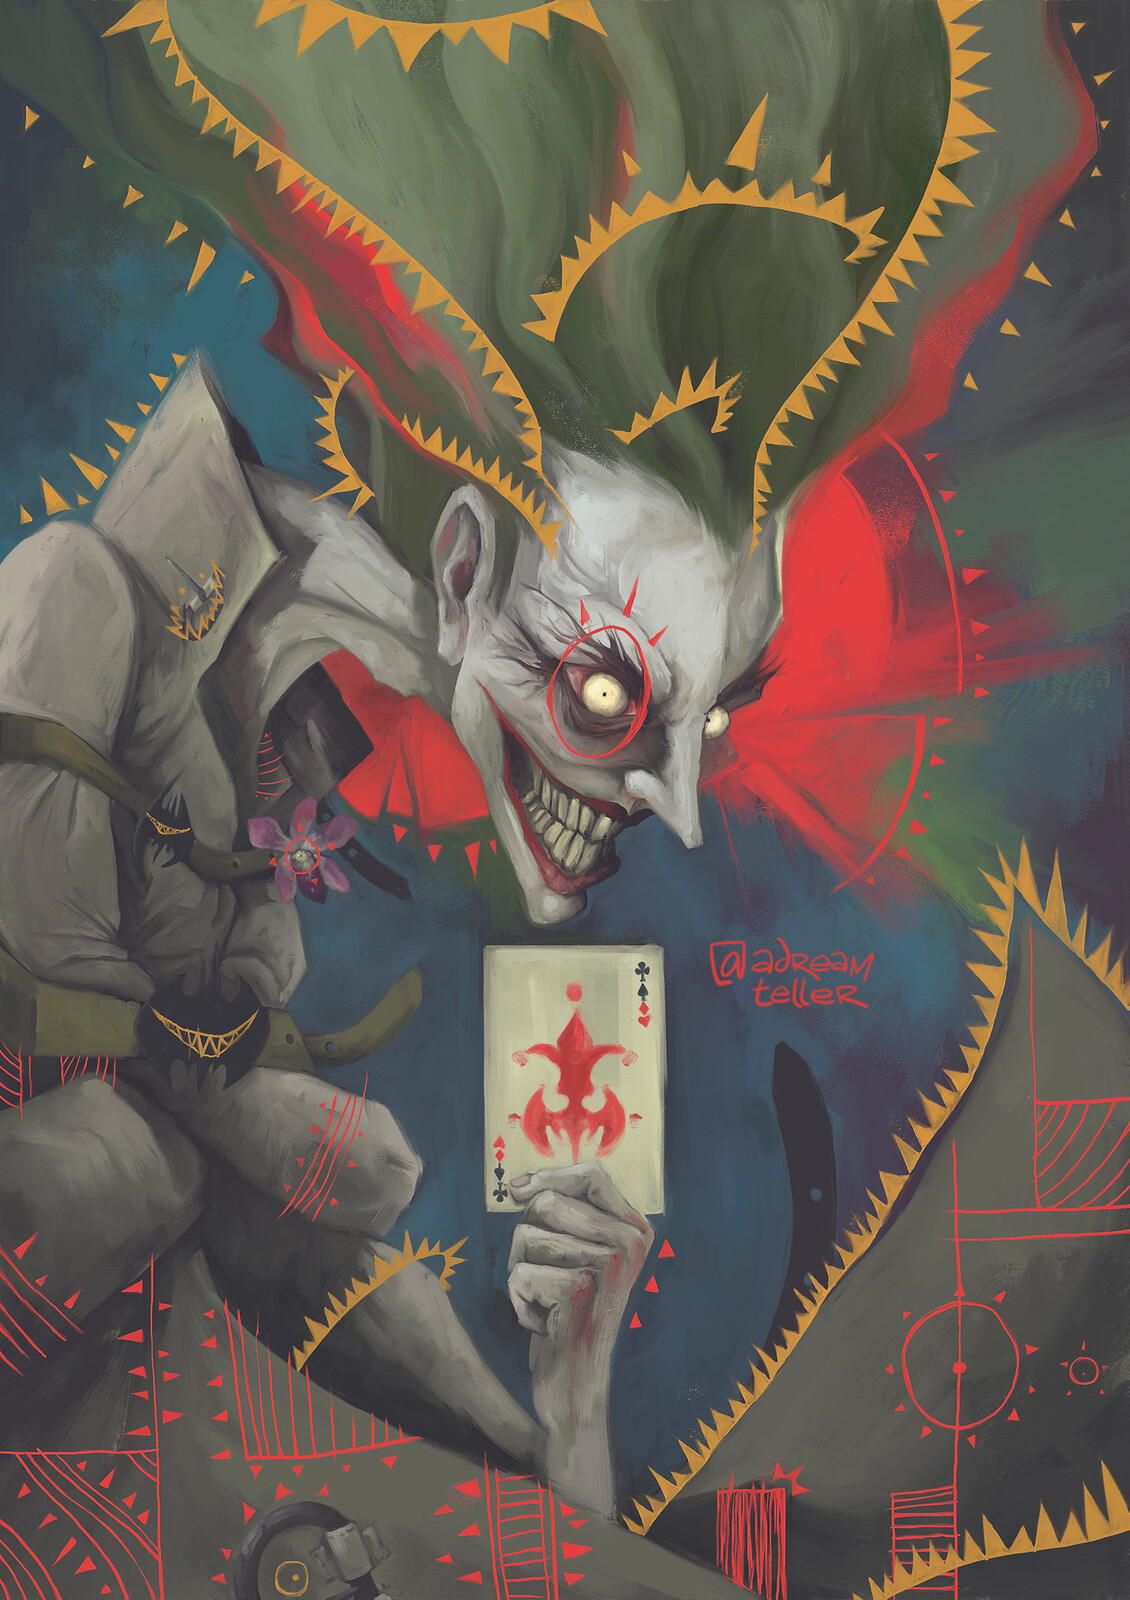 Joker inspired artwork